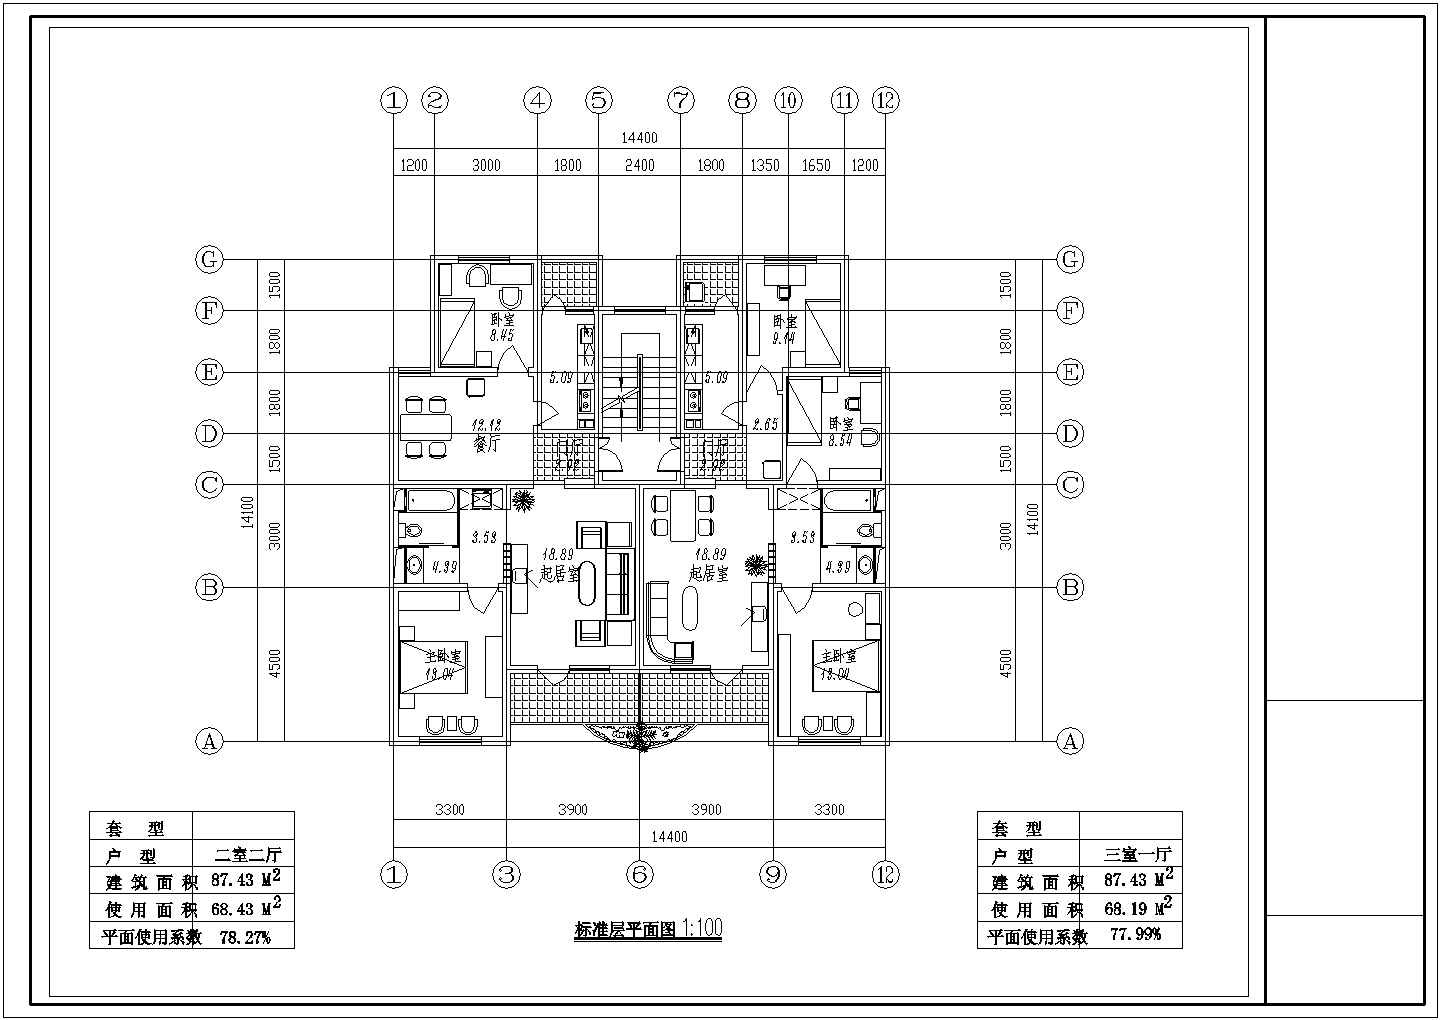 小区住宅1梯2户标准层不对称户型施工图【2室2厅1卫2阳台87.43平米 3室1厅1卫2阳台87.43平米】